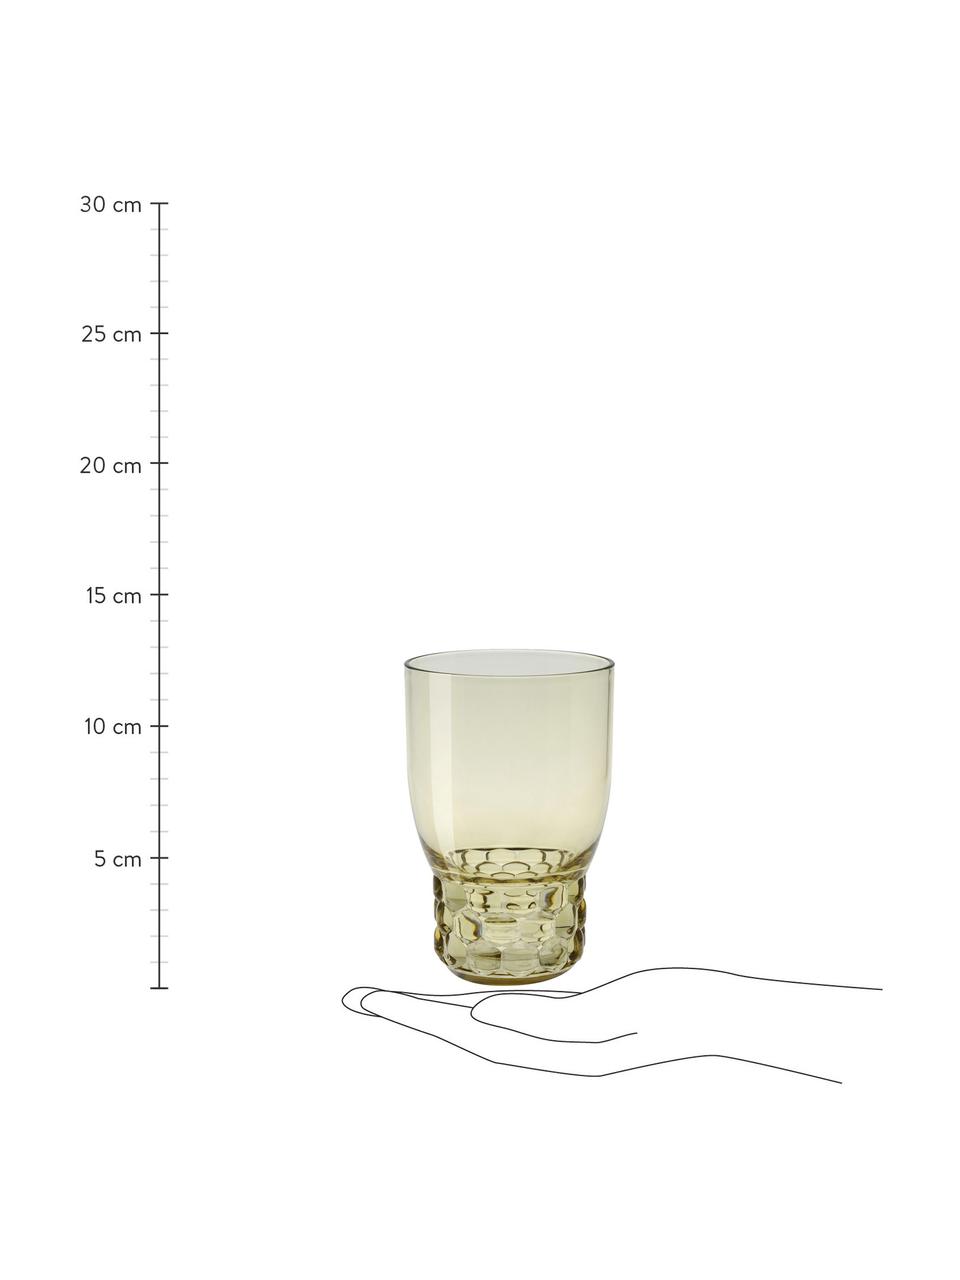 Waterglazen Jellies met structuurpatroon, 4 stuks, Kunststof, Lichtgroen, transparant, Ø 9 x H 13 cm, 460 ml